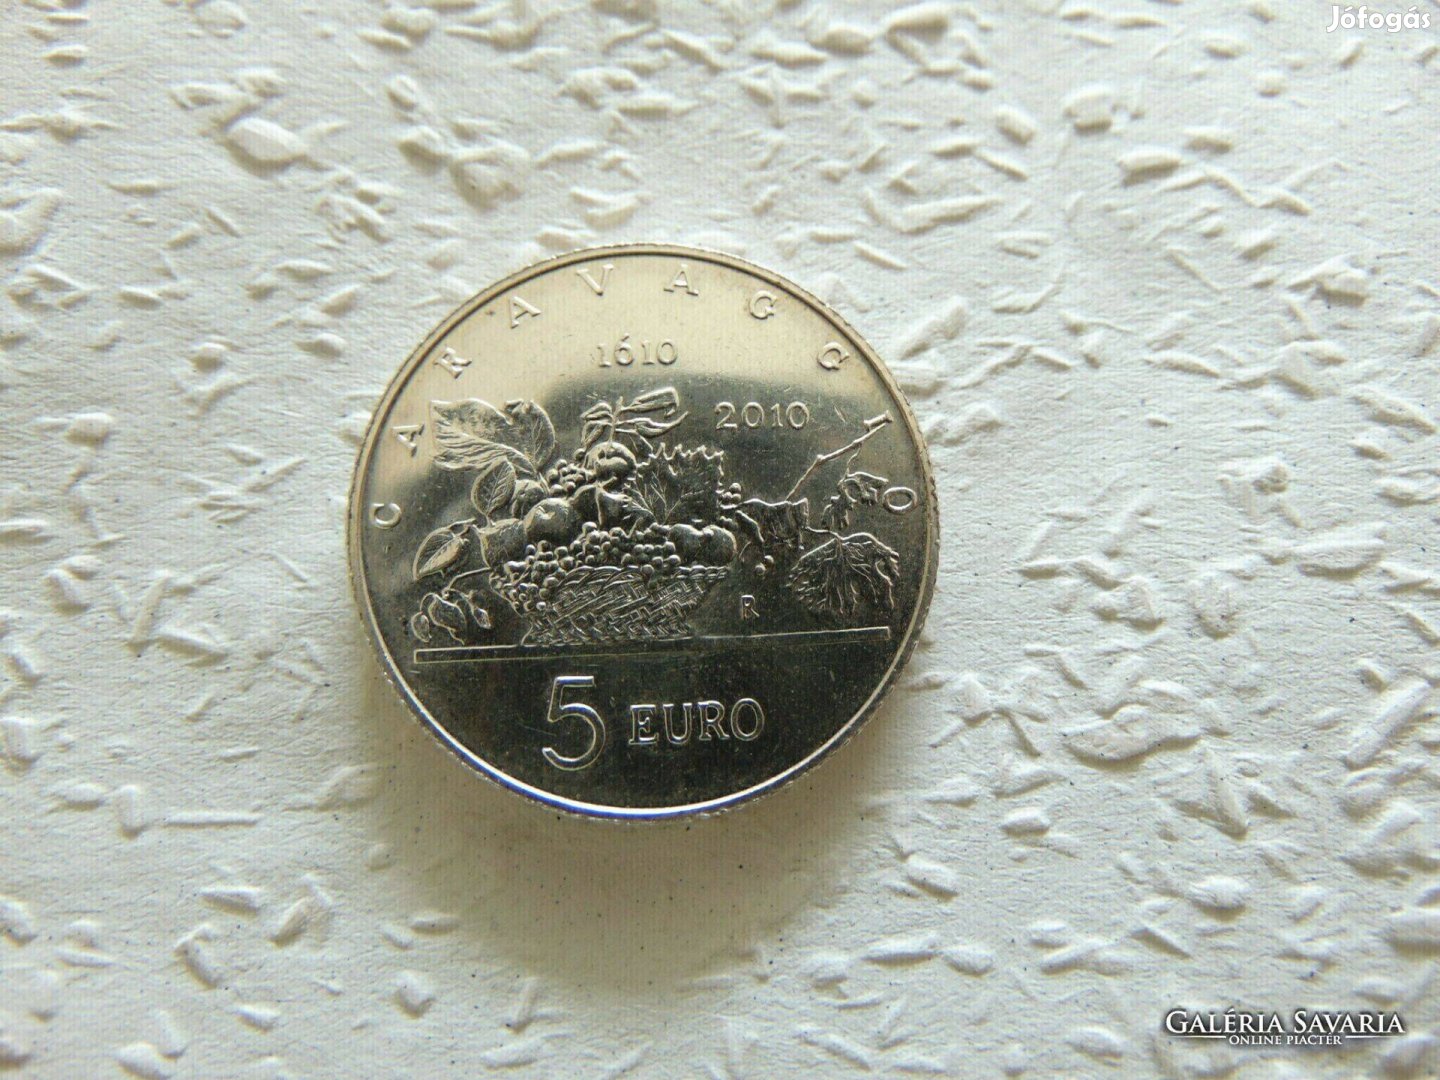 San Marino ezüst 5 euro 2010 18 gramm 925 - ös ezüst